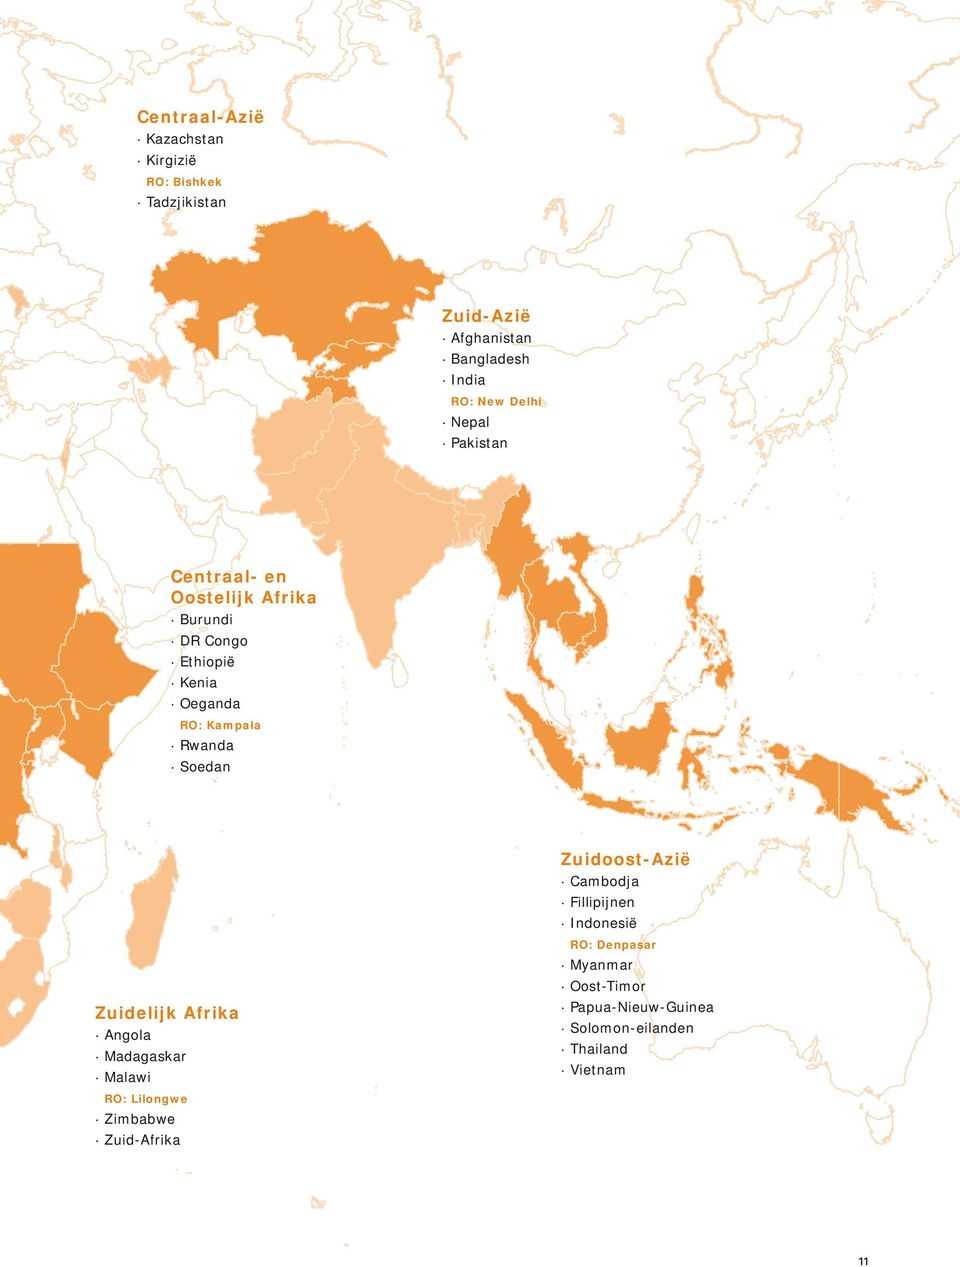 Rwanda Soedan Zuidoost-Azië Cambodja Fillipijnen Indonesië RO: Denpasar Myanmar Oost-Timor Zuidelijk Afrika